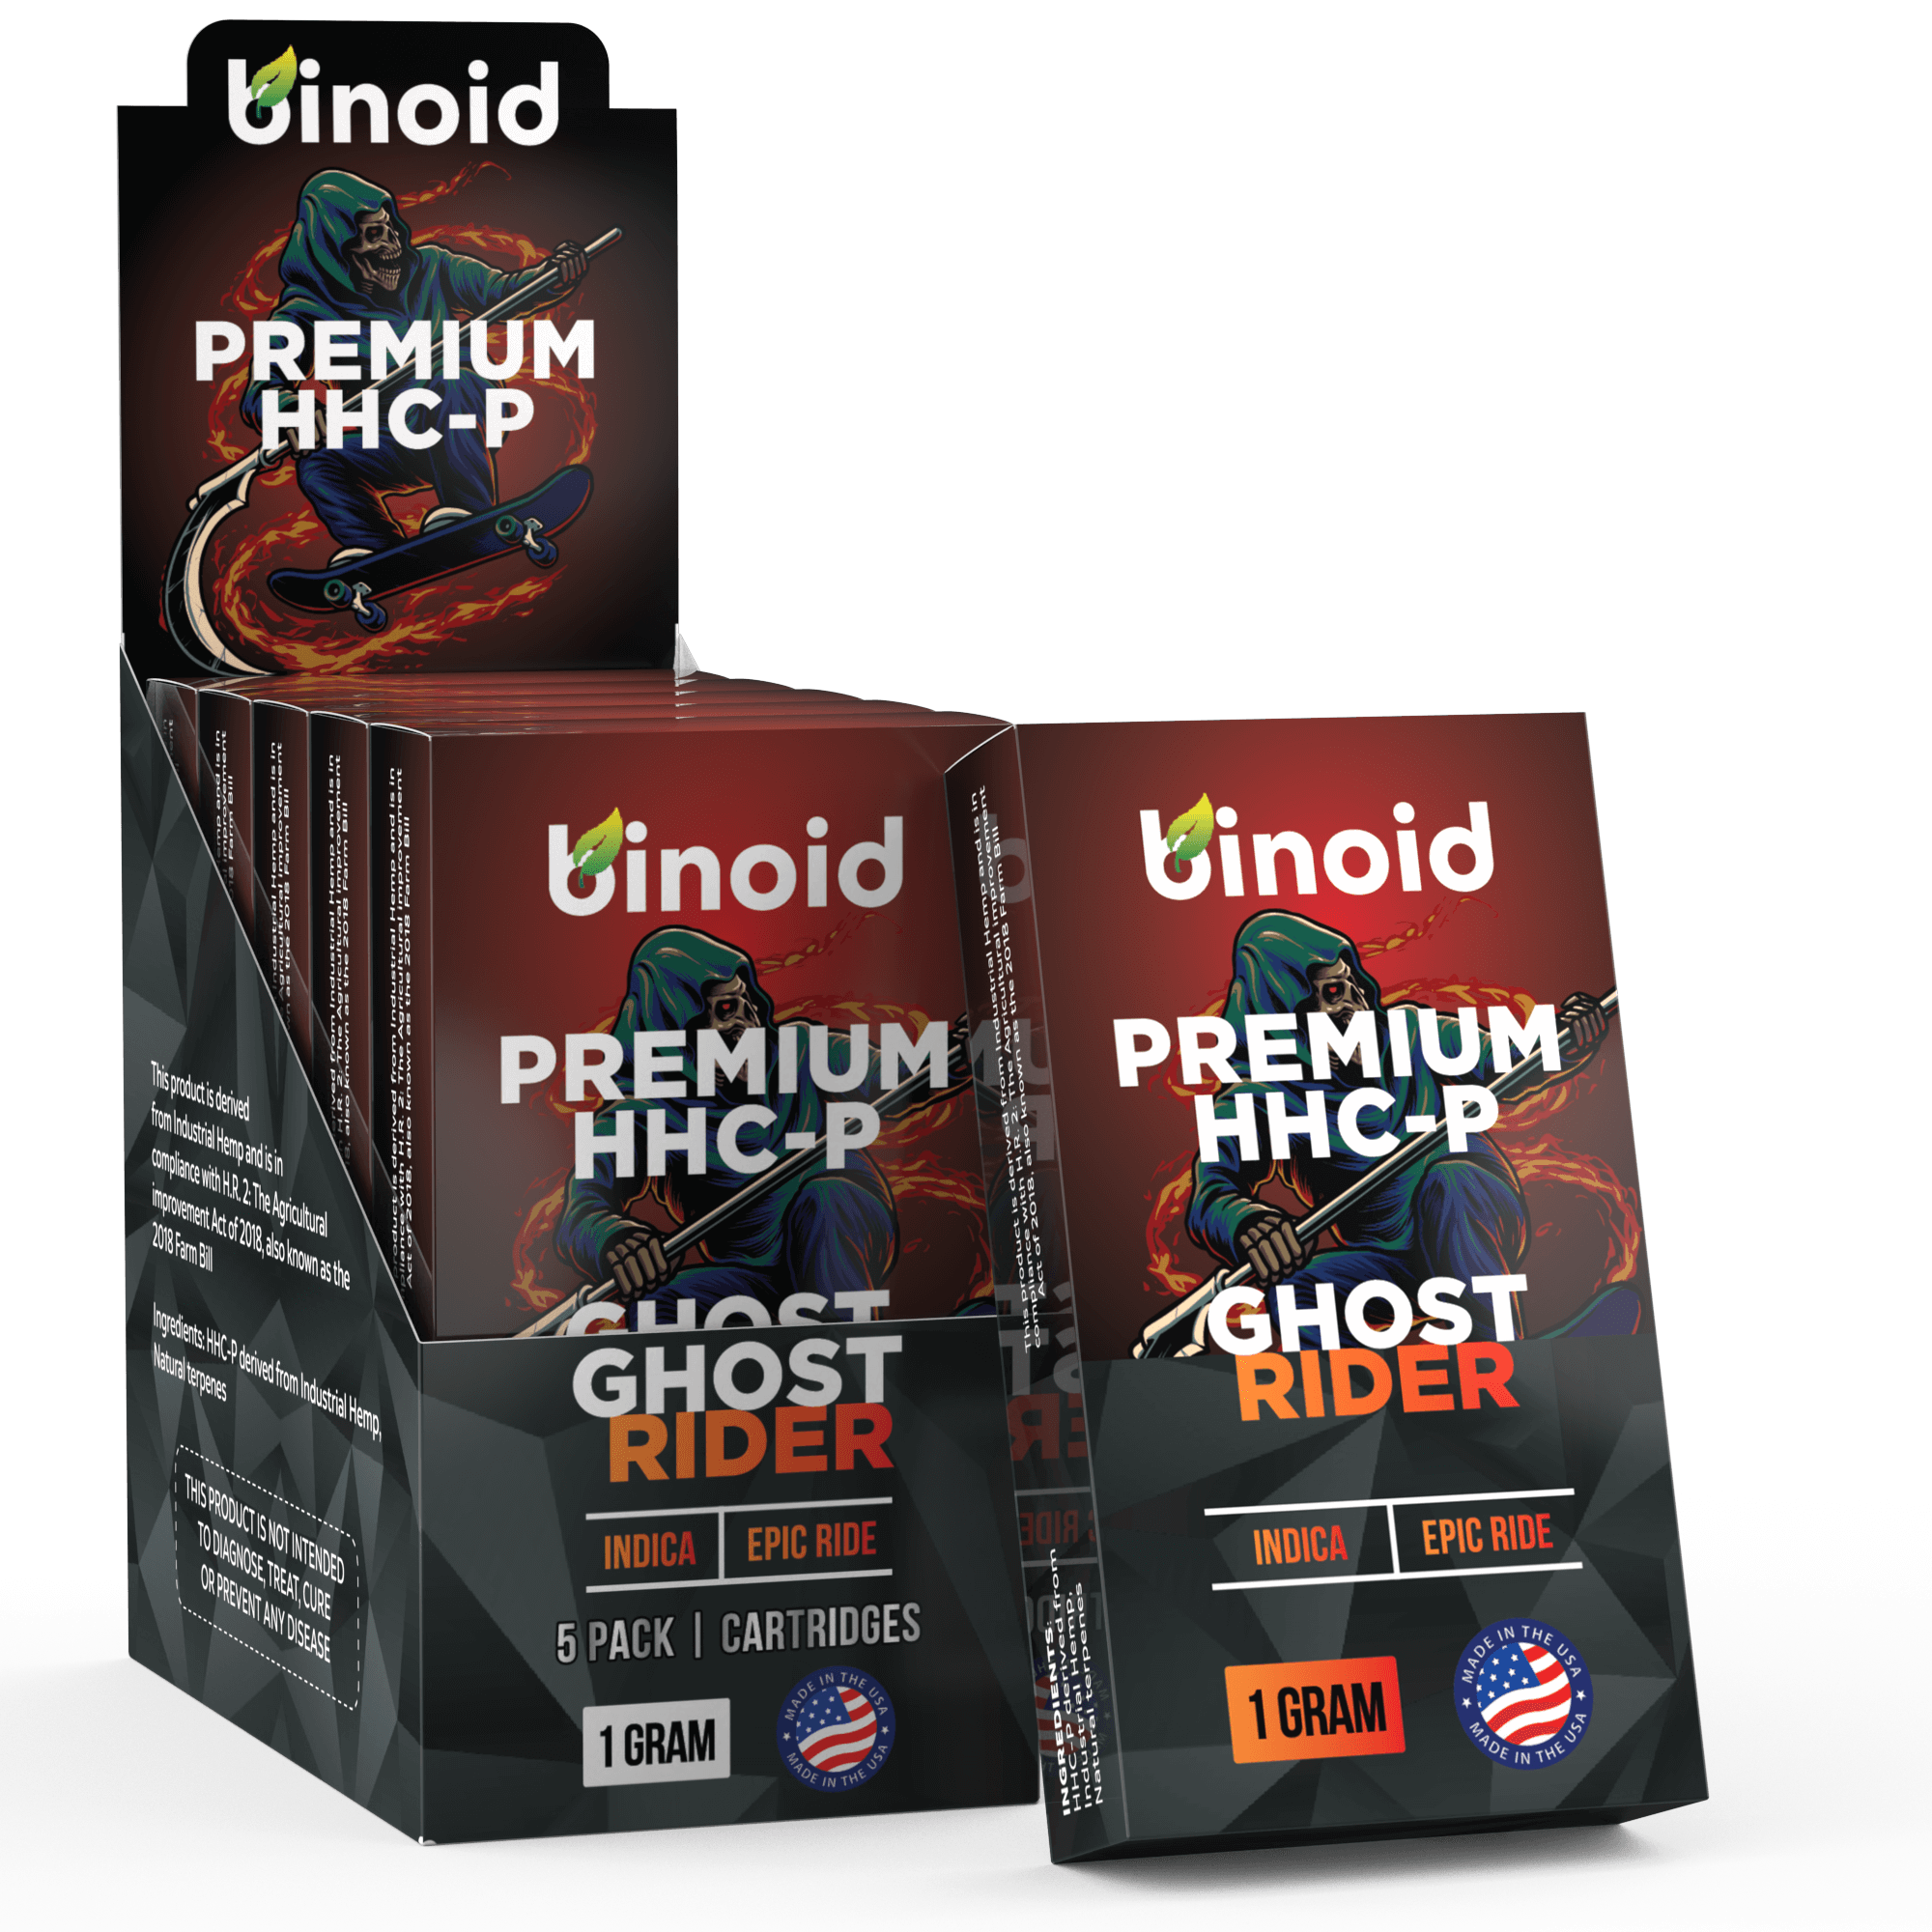 Binoid HHC-P Vape Cartridge - Ghost Rider Best Price